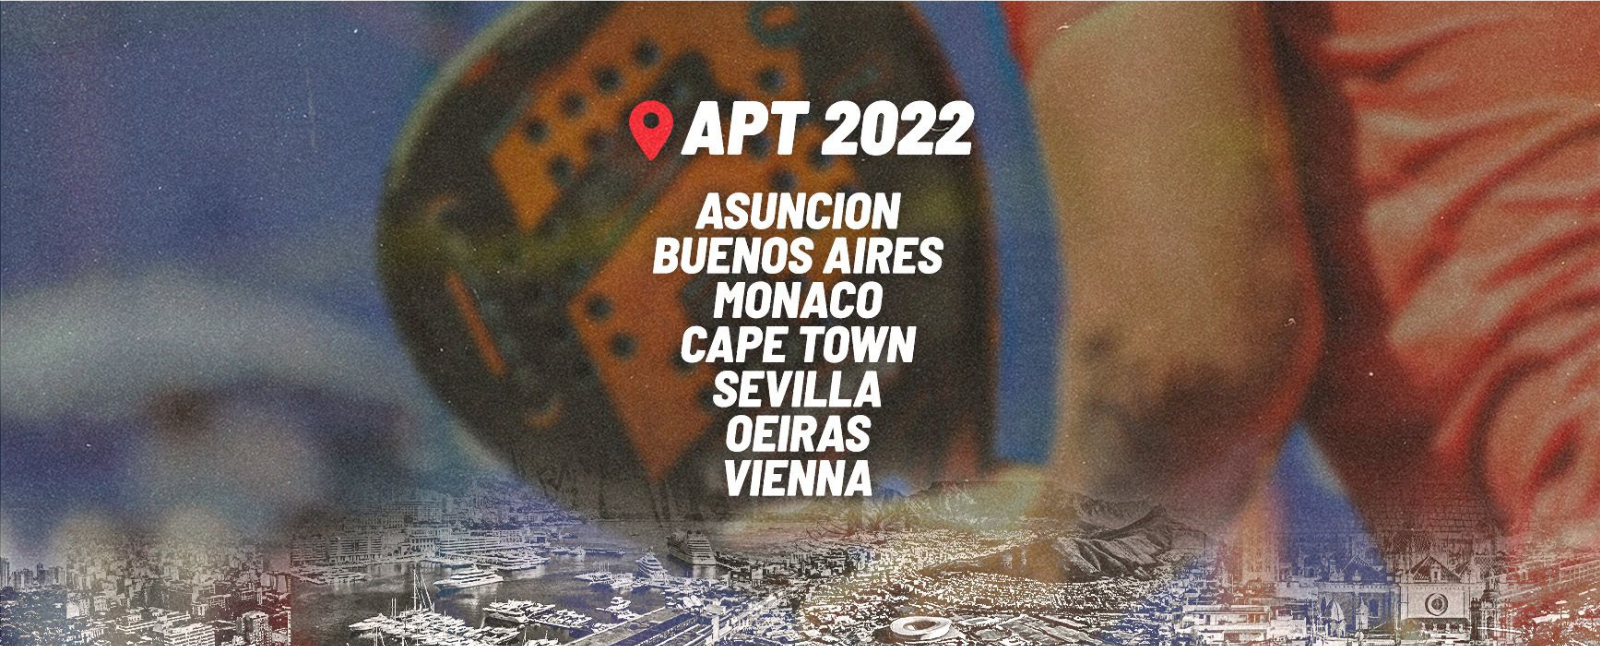 A espetacular programação do APT Padel Tour para 2022